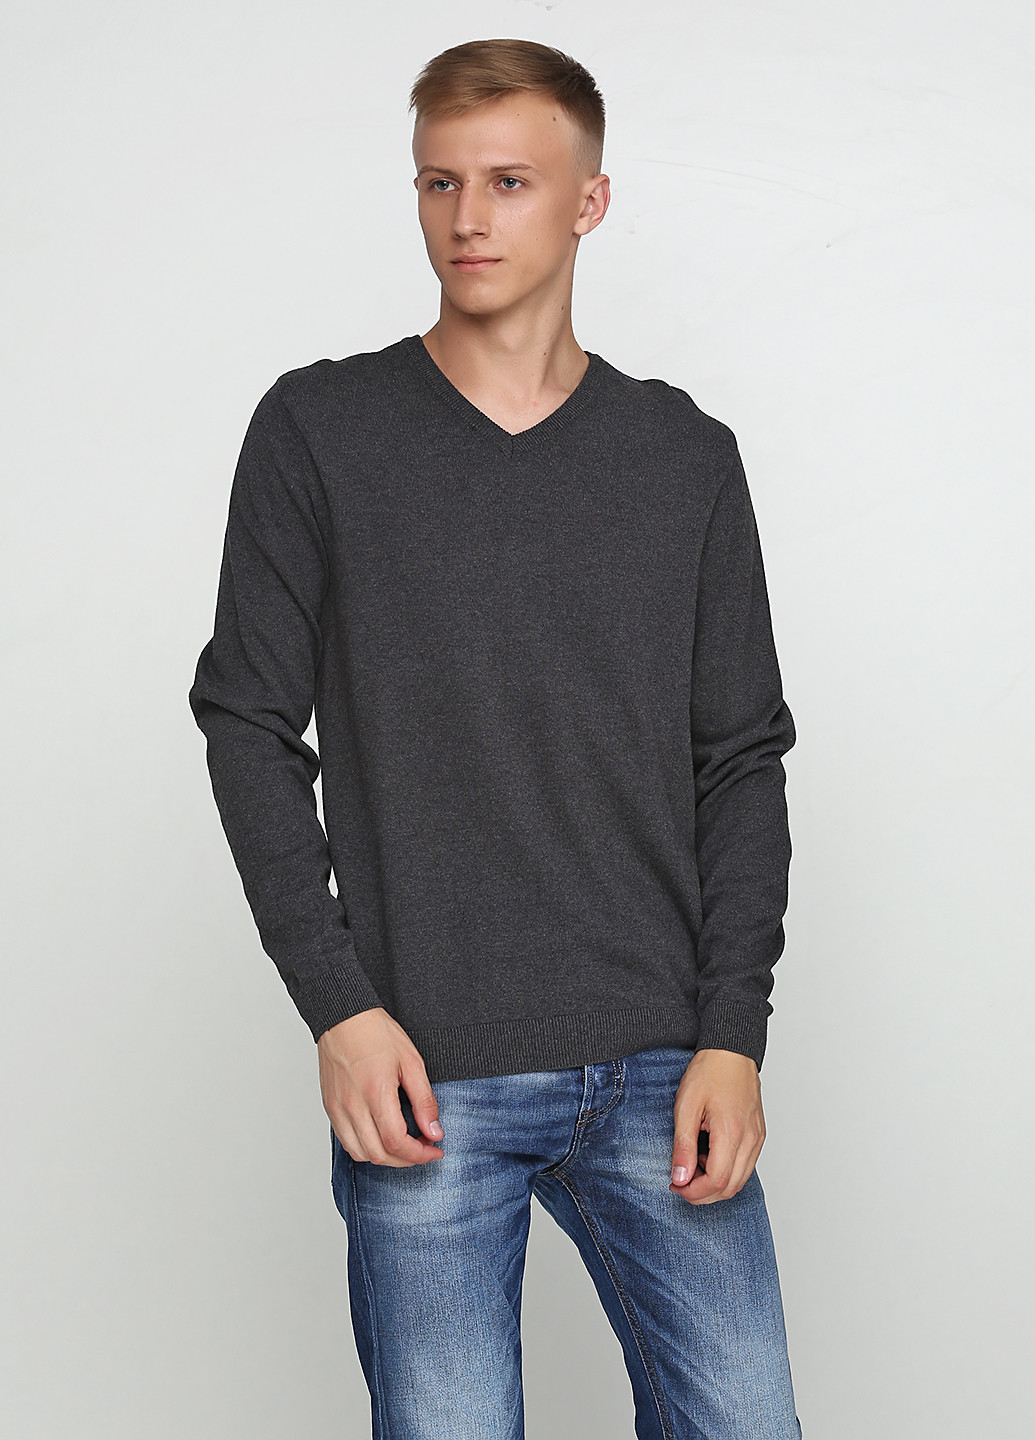 Грифельно-серый демисезонный пуловер пуловер Jean Pascal